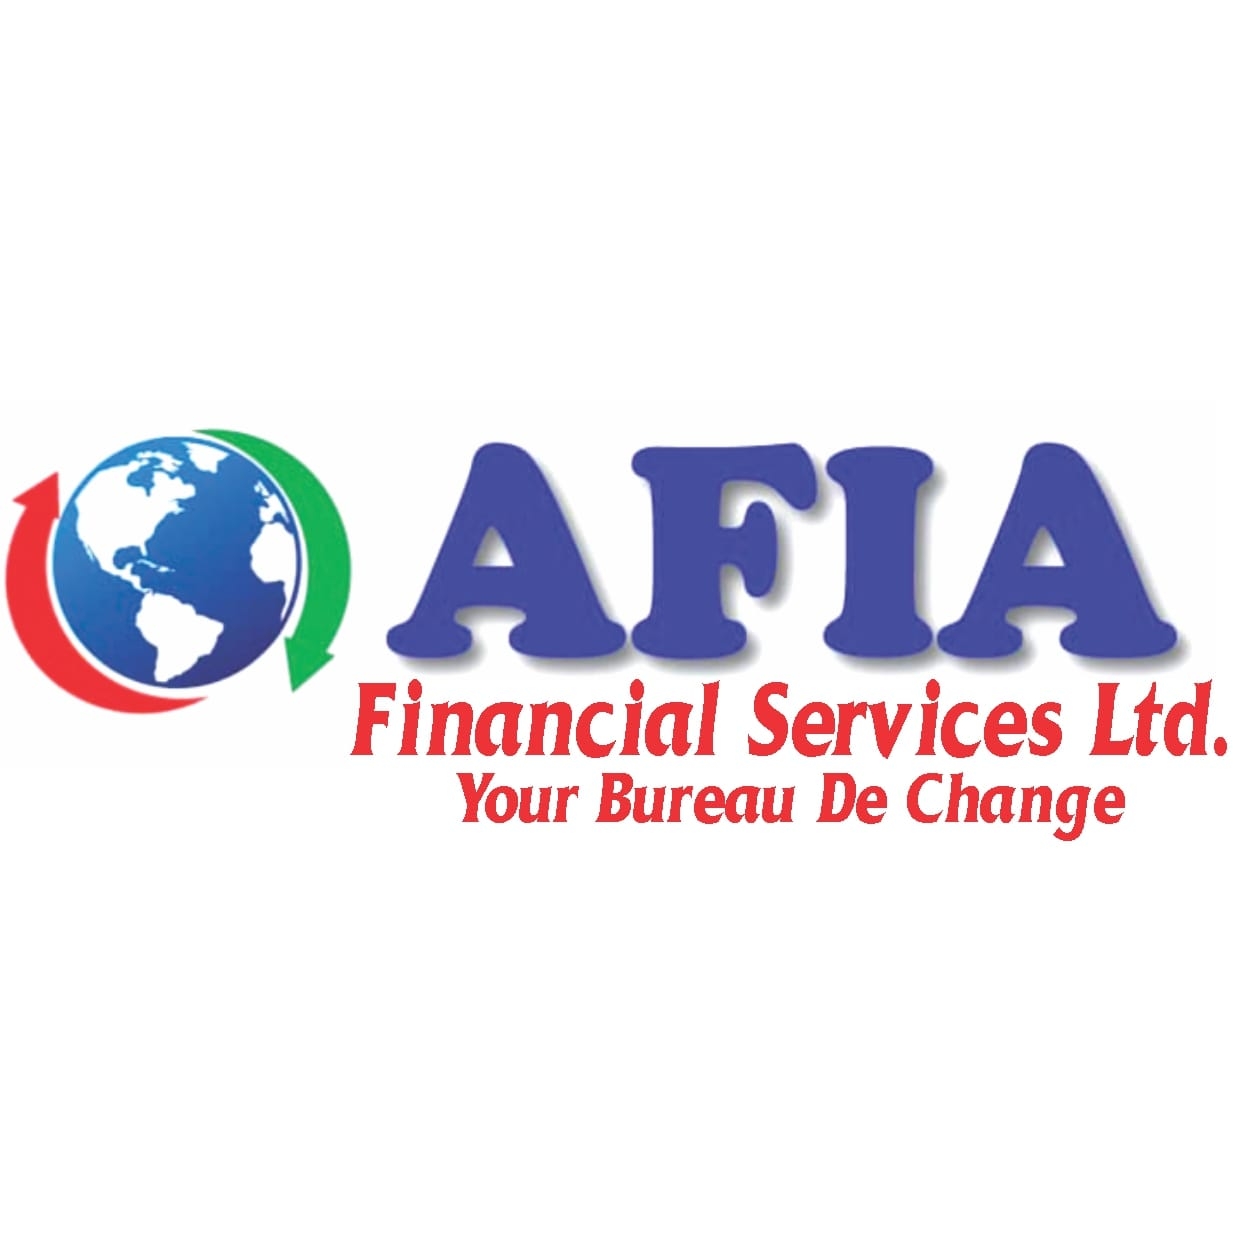 Afia Financial Services and Bureau De Change